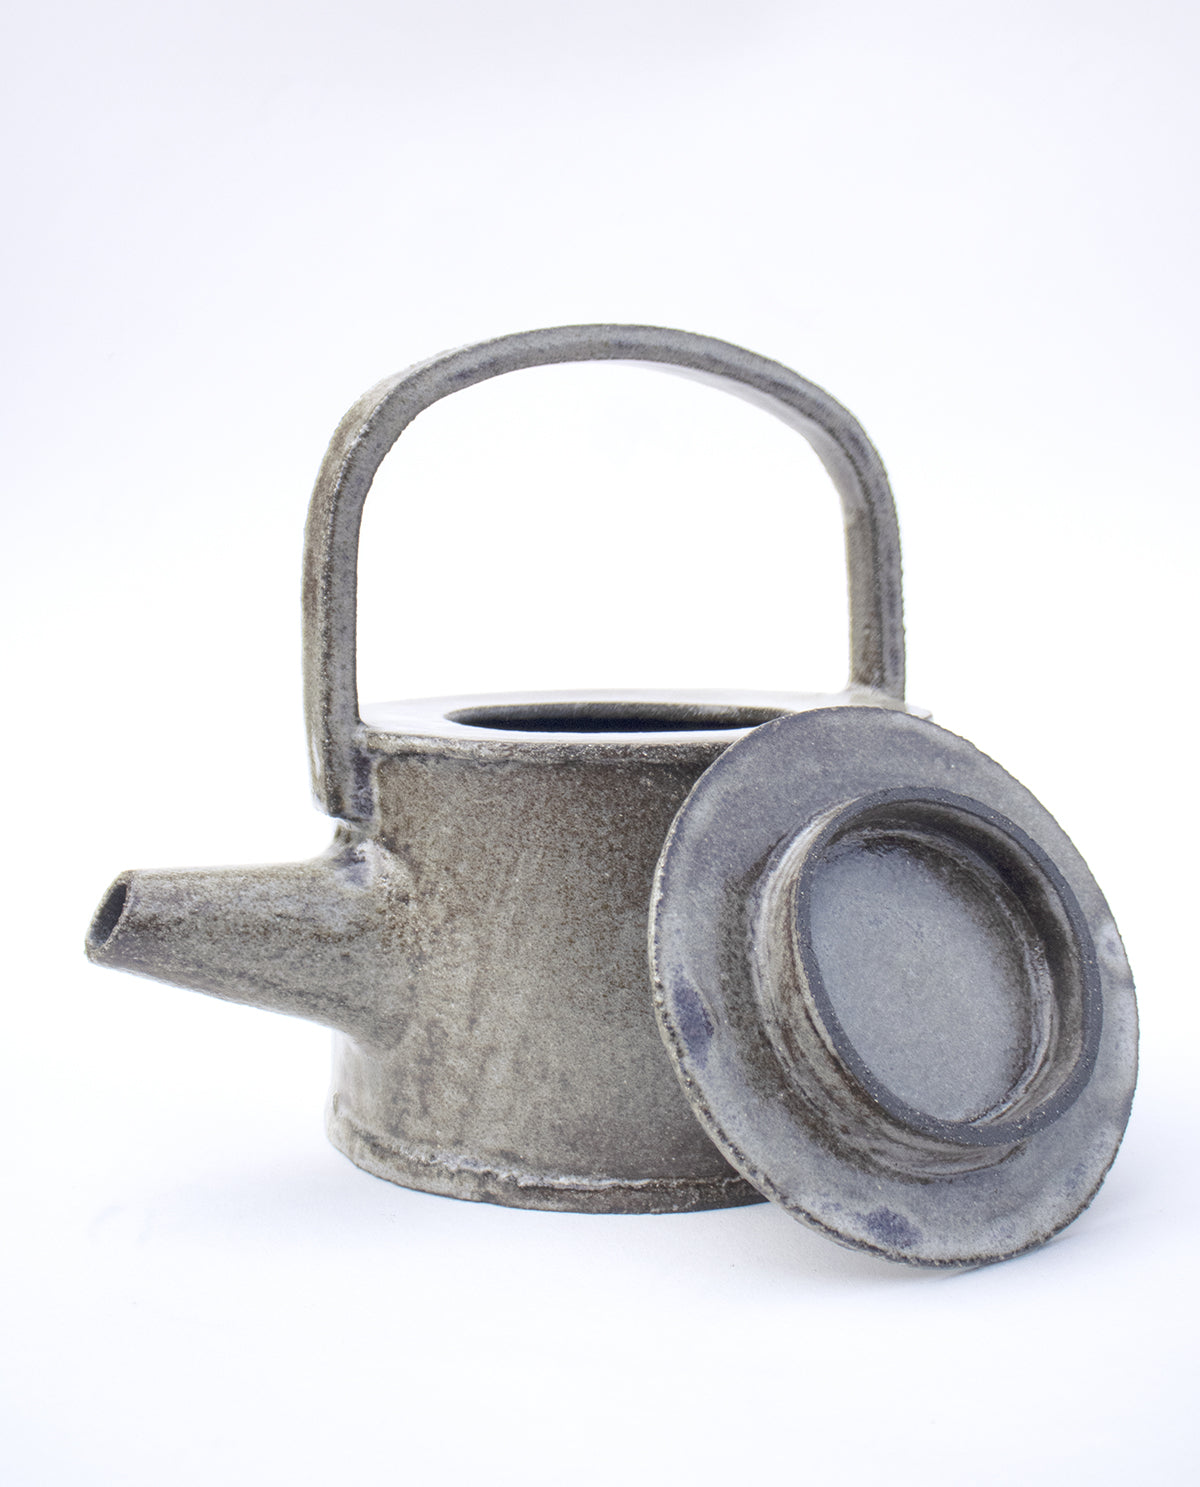 Ceramic Teapot ‘N°6' - Unique Piece